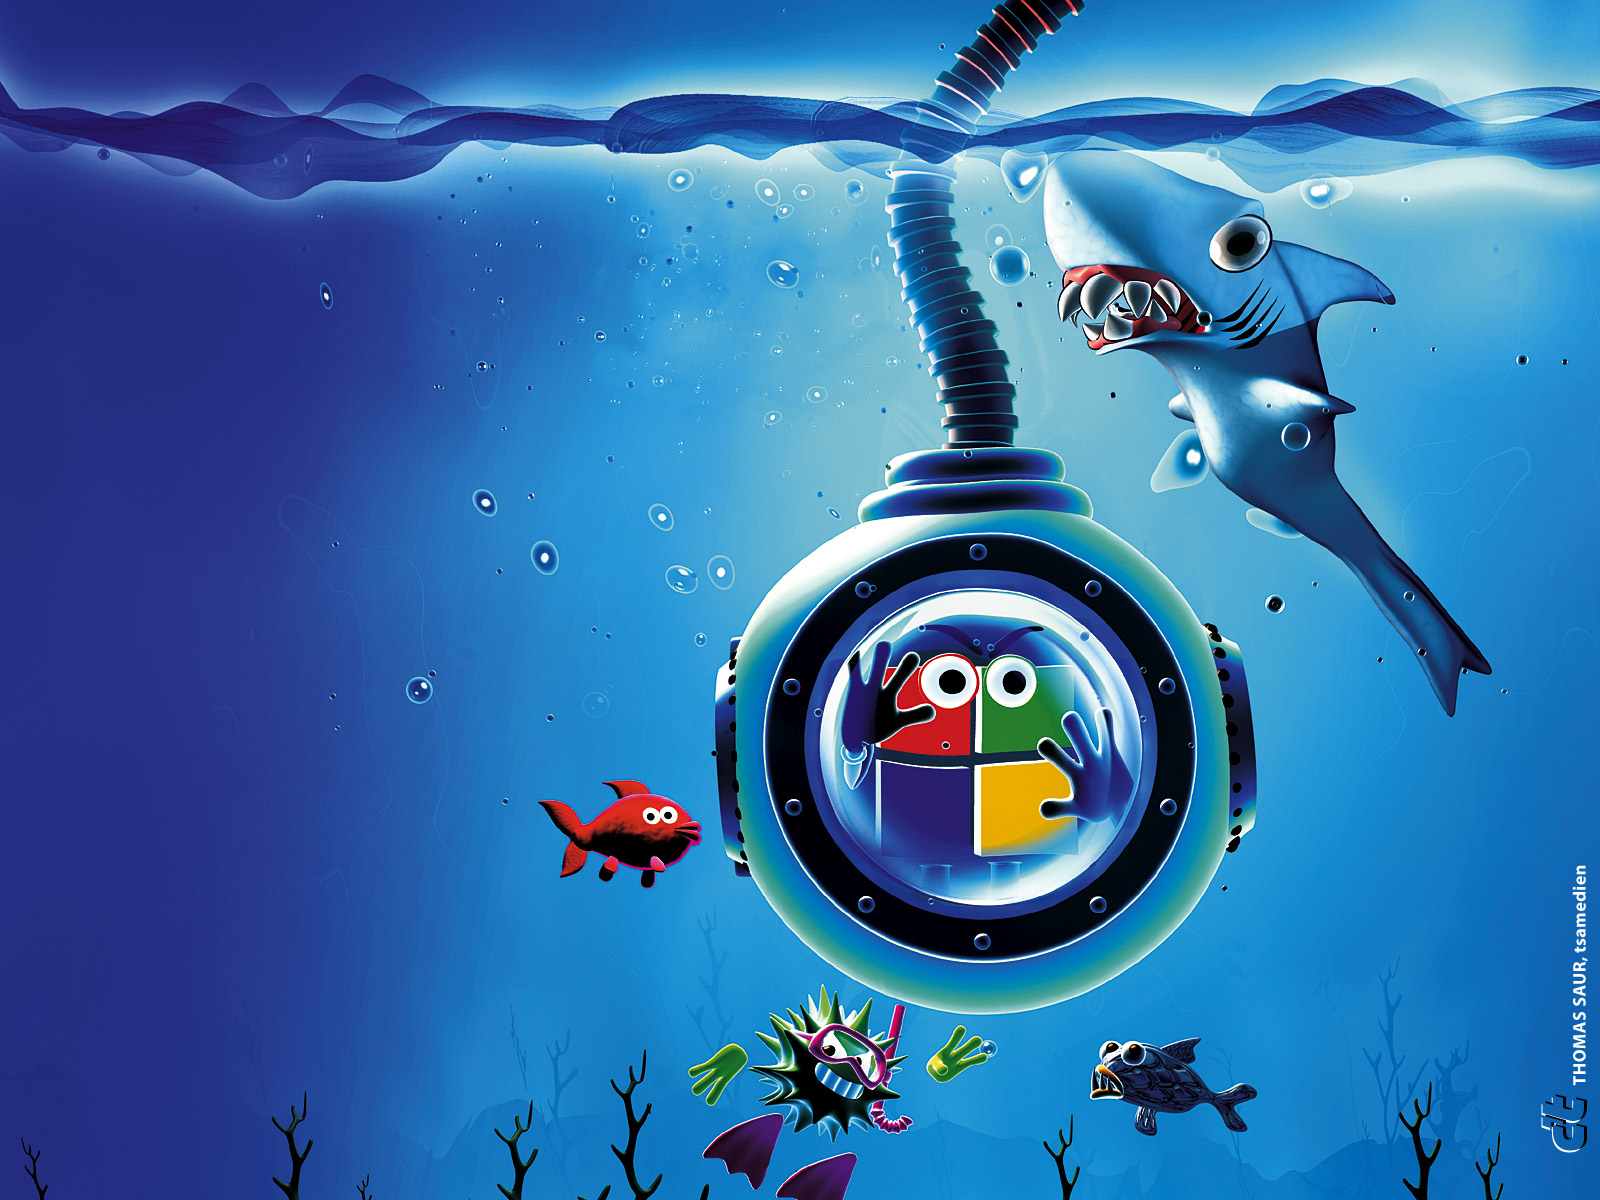 sfondo del desktop linux,subacqueo,illustrazione,disegno grafico,pesce,grafica